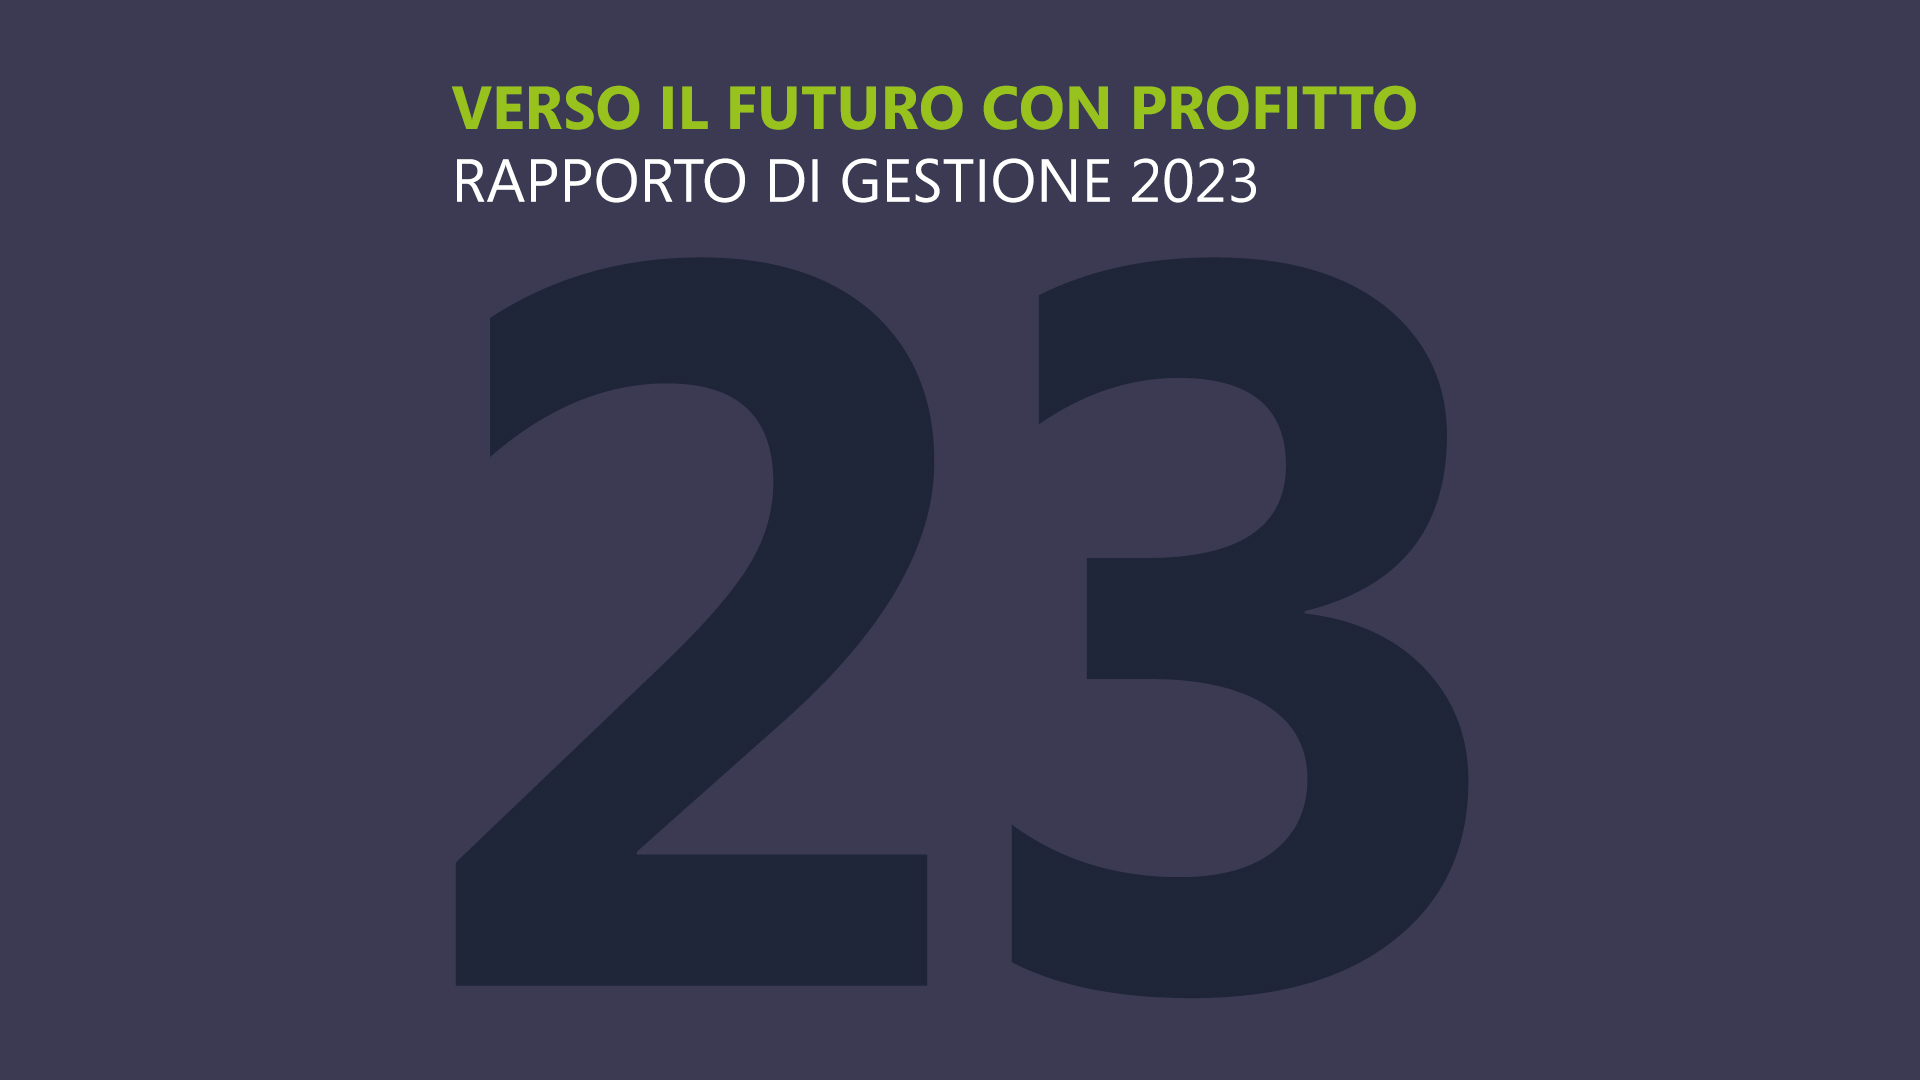 Verso il futuro con profitto - Rapporto di gestione 2023